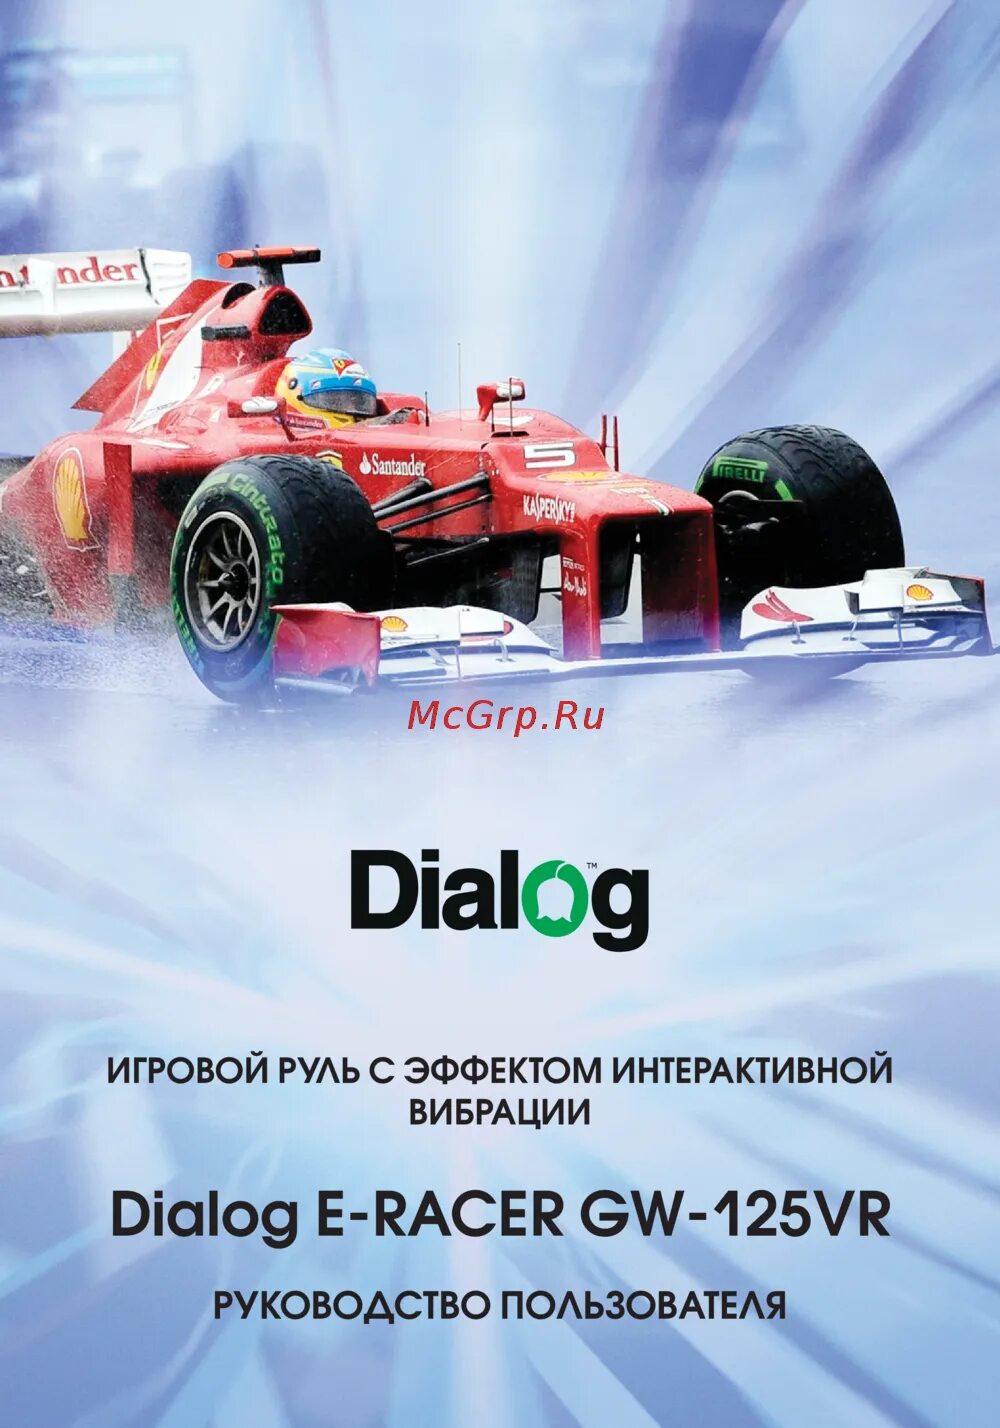 Dialog 125vr. Руль dialog GW-125vr e-Racer. Игровой dialog e-Racer GW-225vr. Gw125vr.